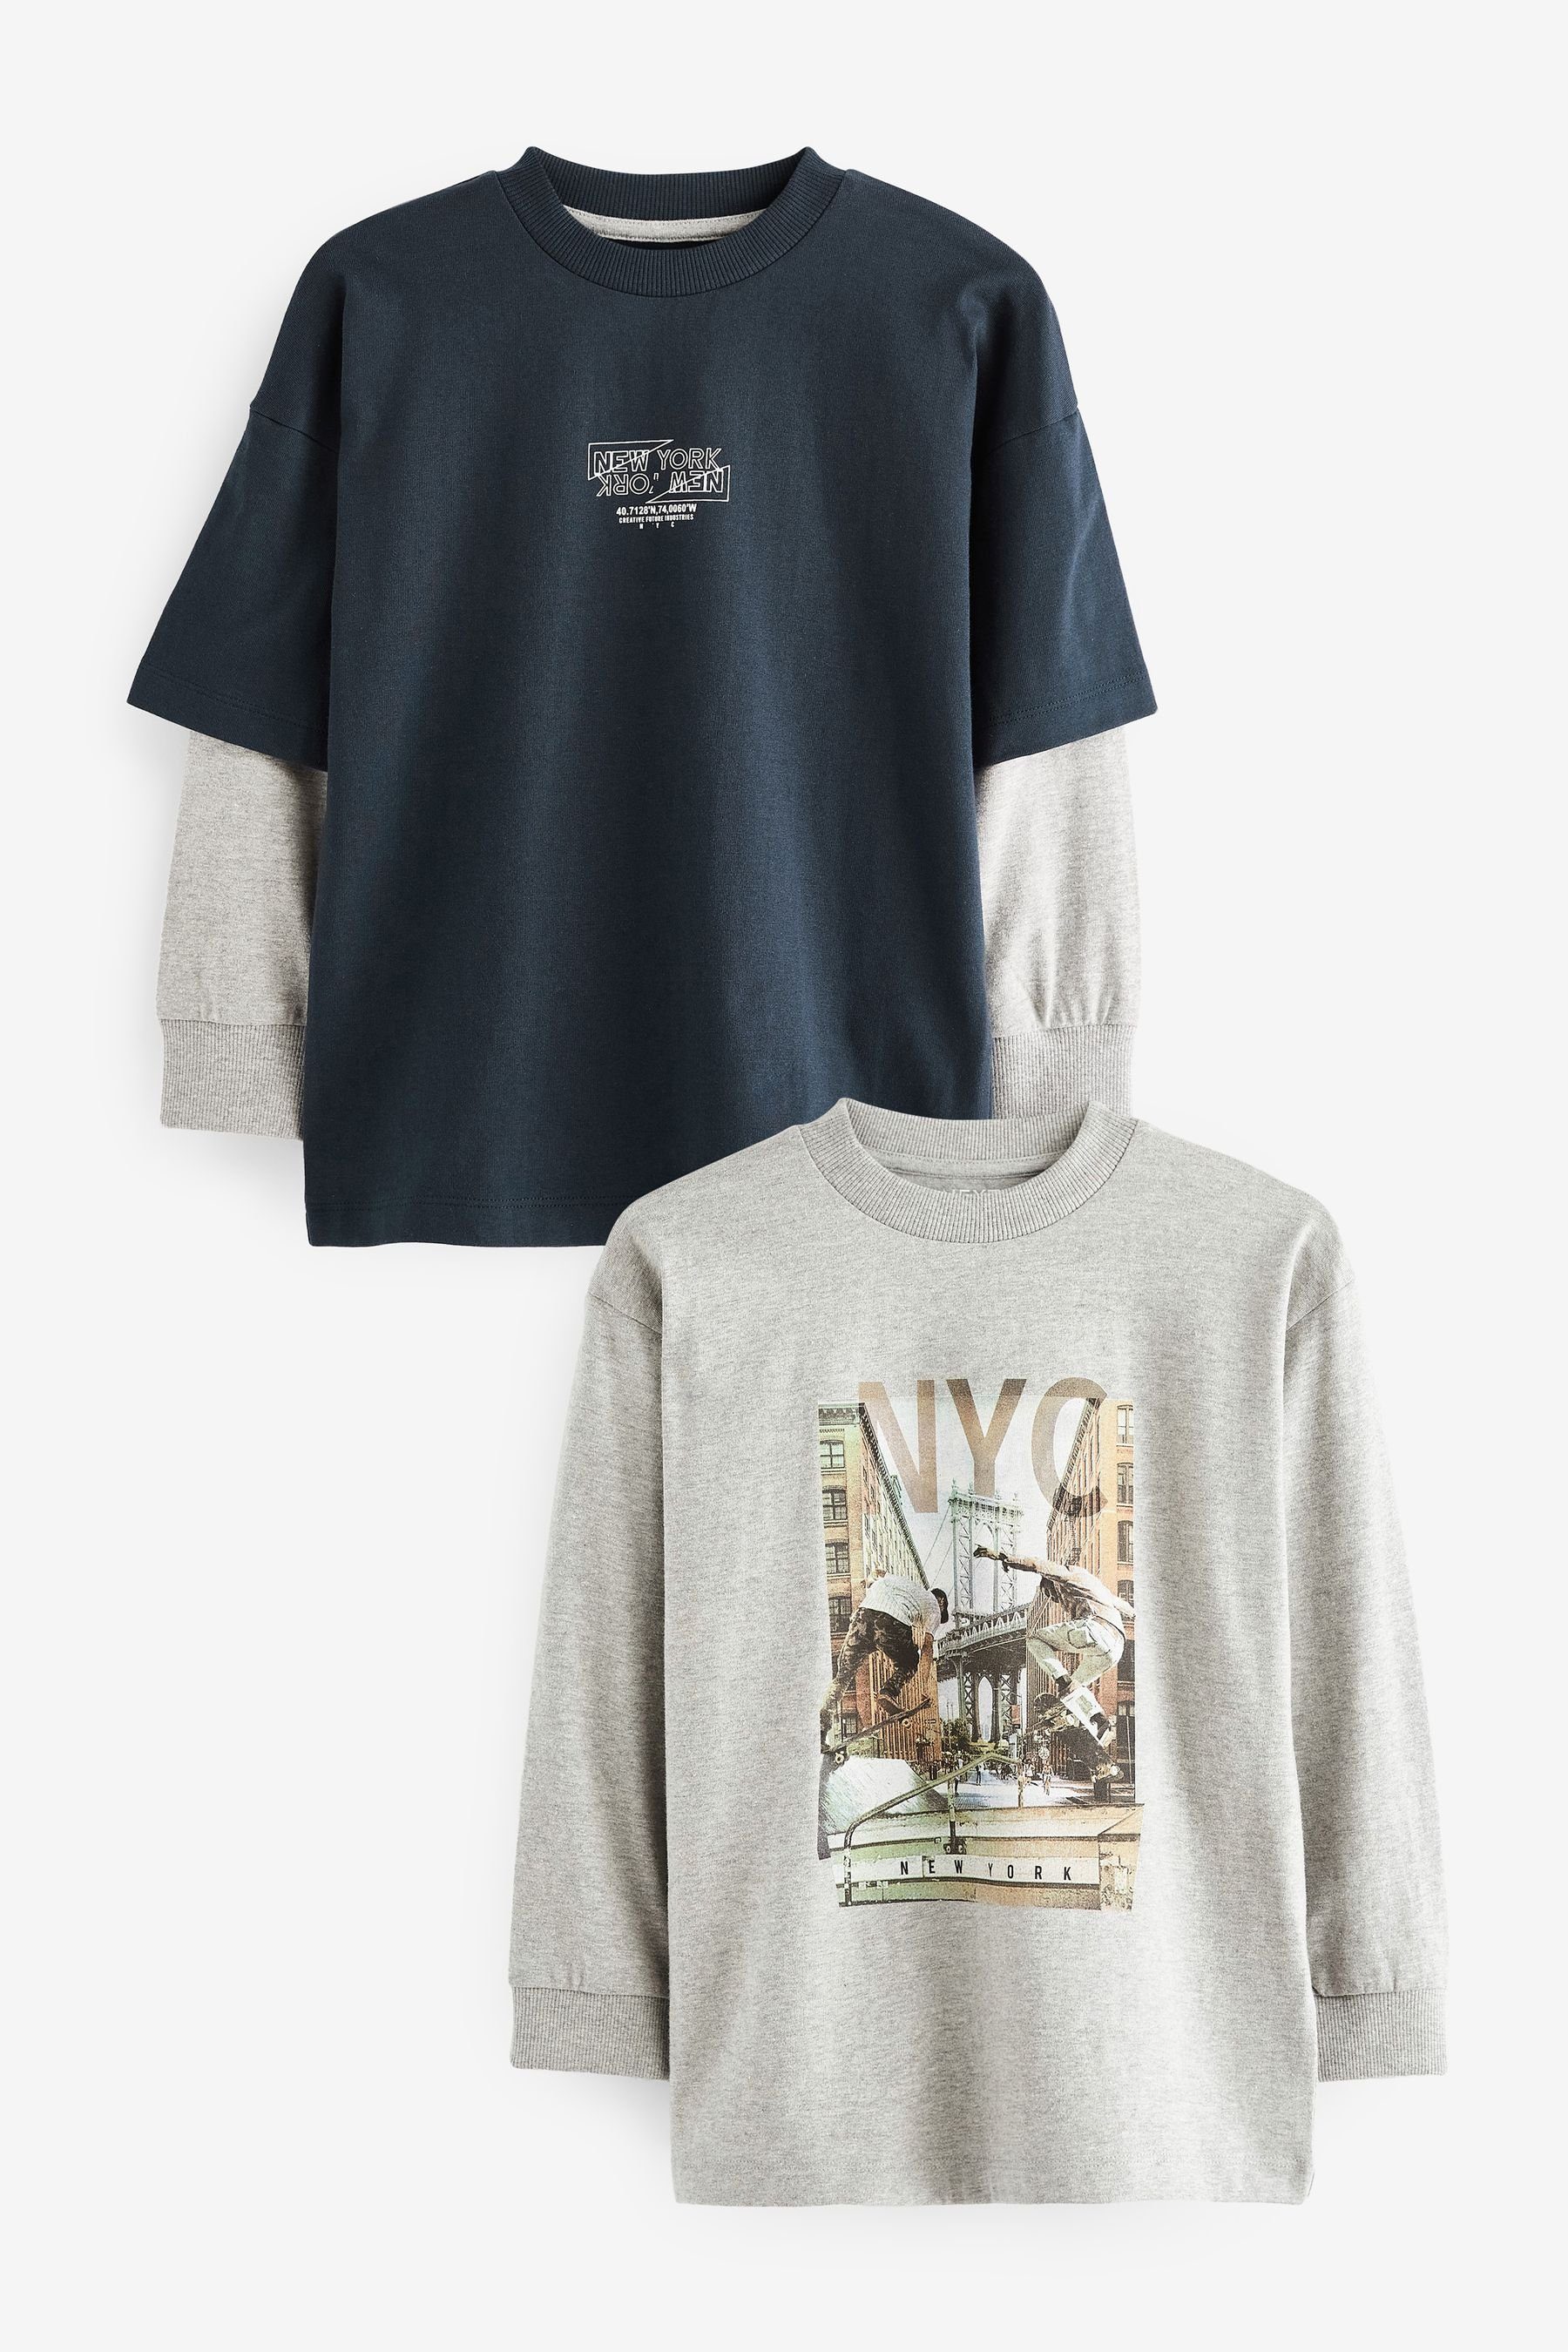 mit Skate Grey/Navy Ärmeln Langarmshirt langen und 2er-Pack (2-tlg) Grafik T-Shirt Next